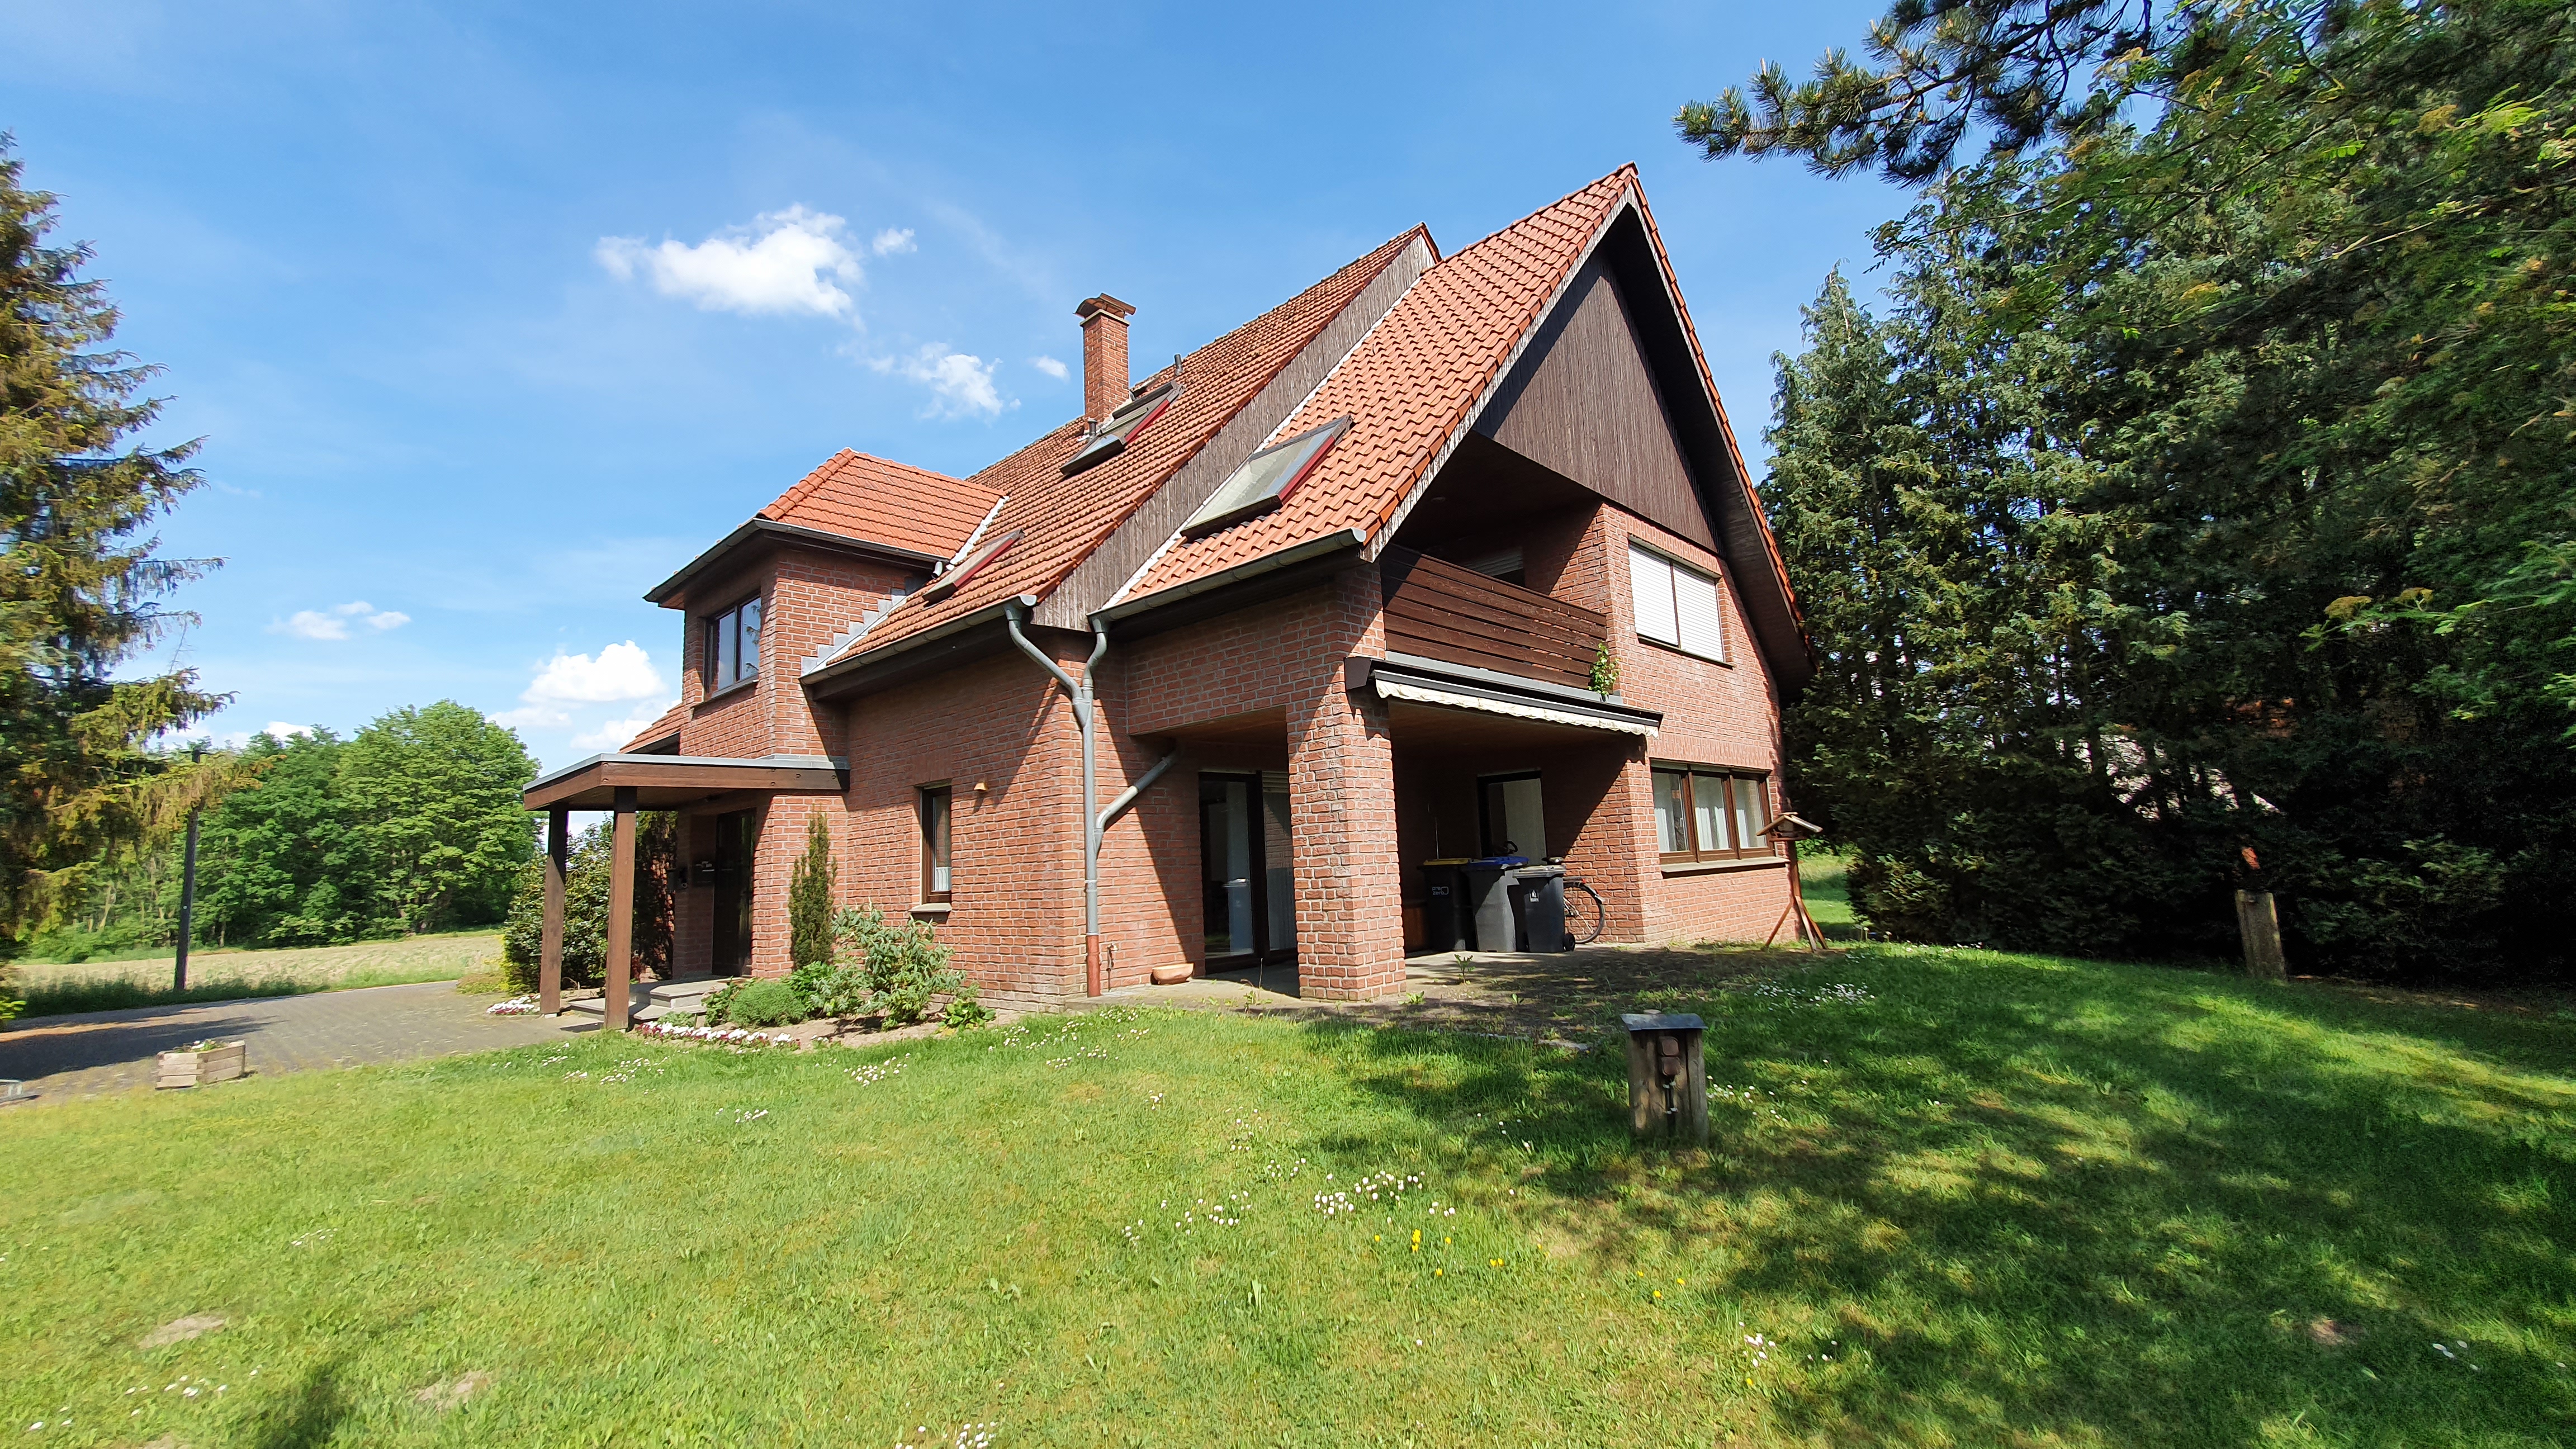 Herzebrock-Clarholz Wohnhaus 2 x  120 qm Wfl. mit Anbau u. 1,2 h Ackerland zu verkaufen